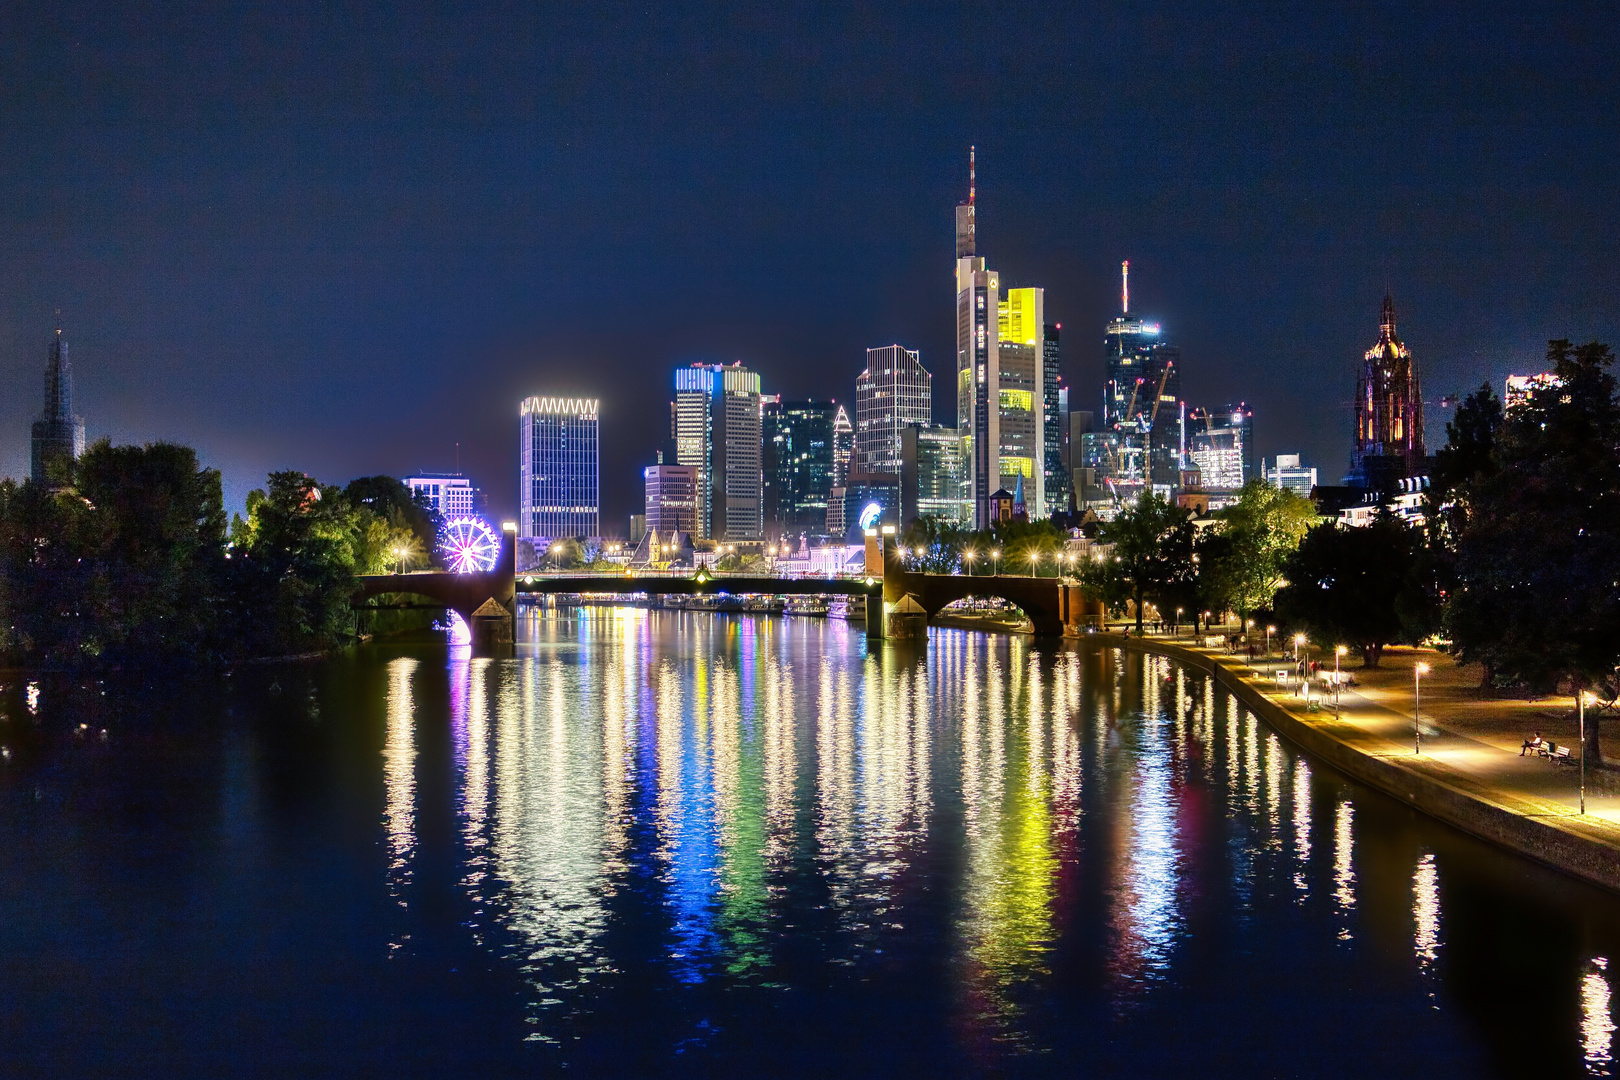 Nächtliche Skyline von Frankfurt am Main.